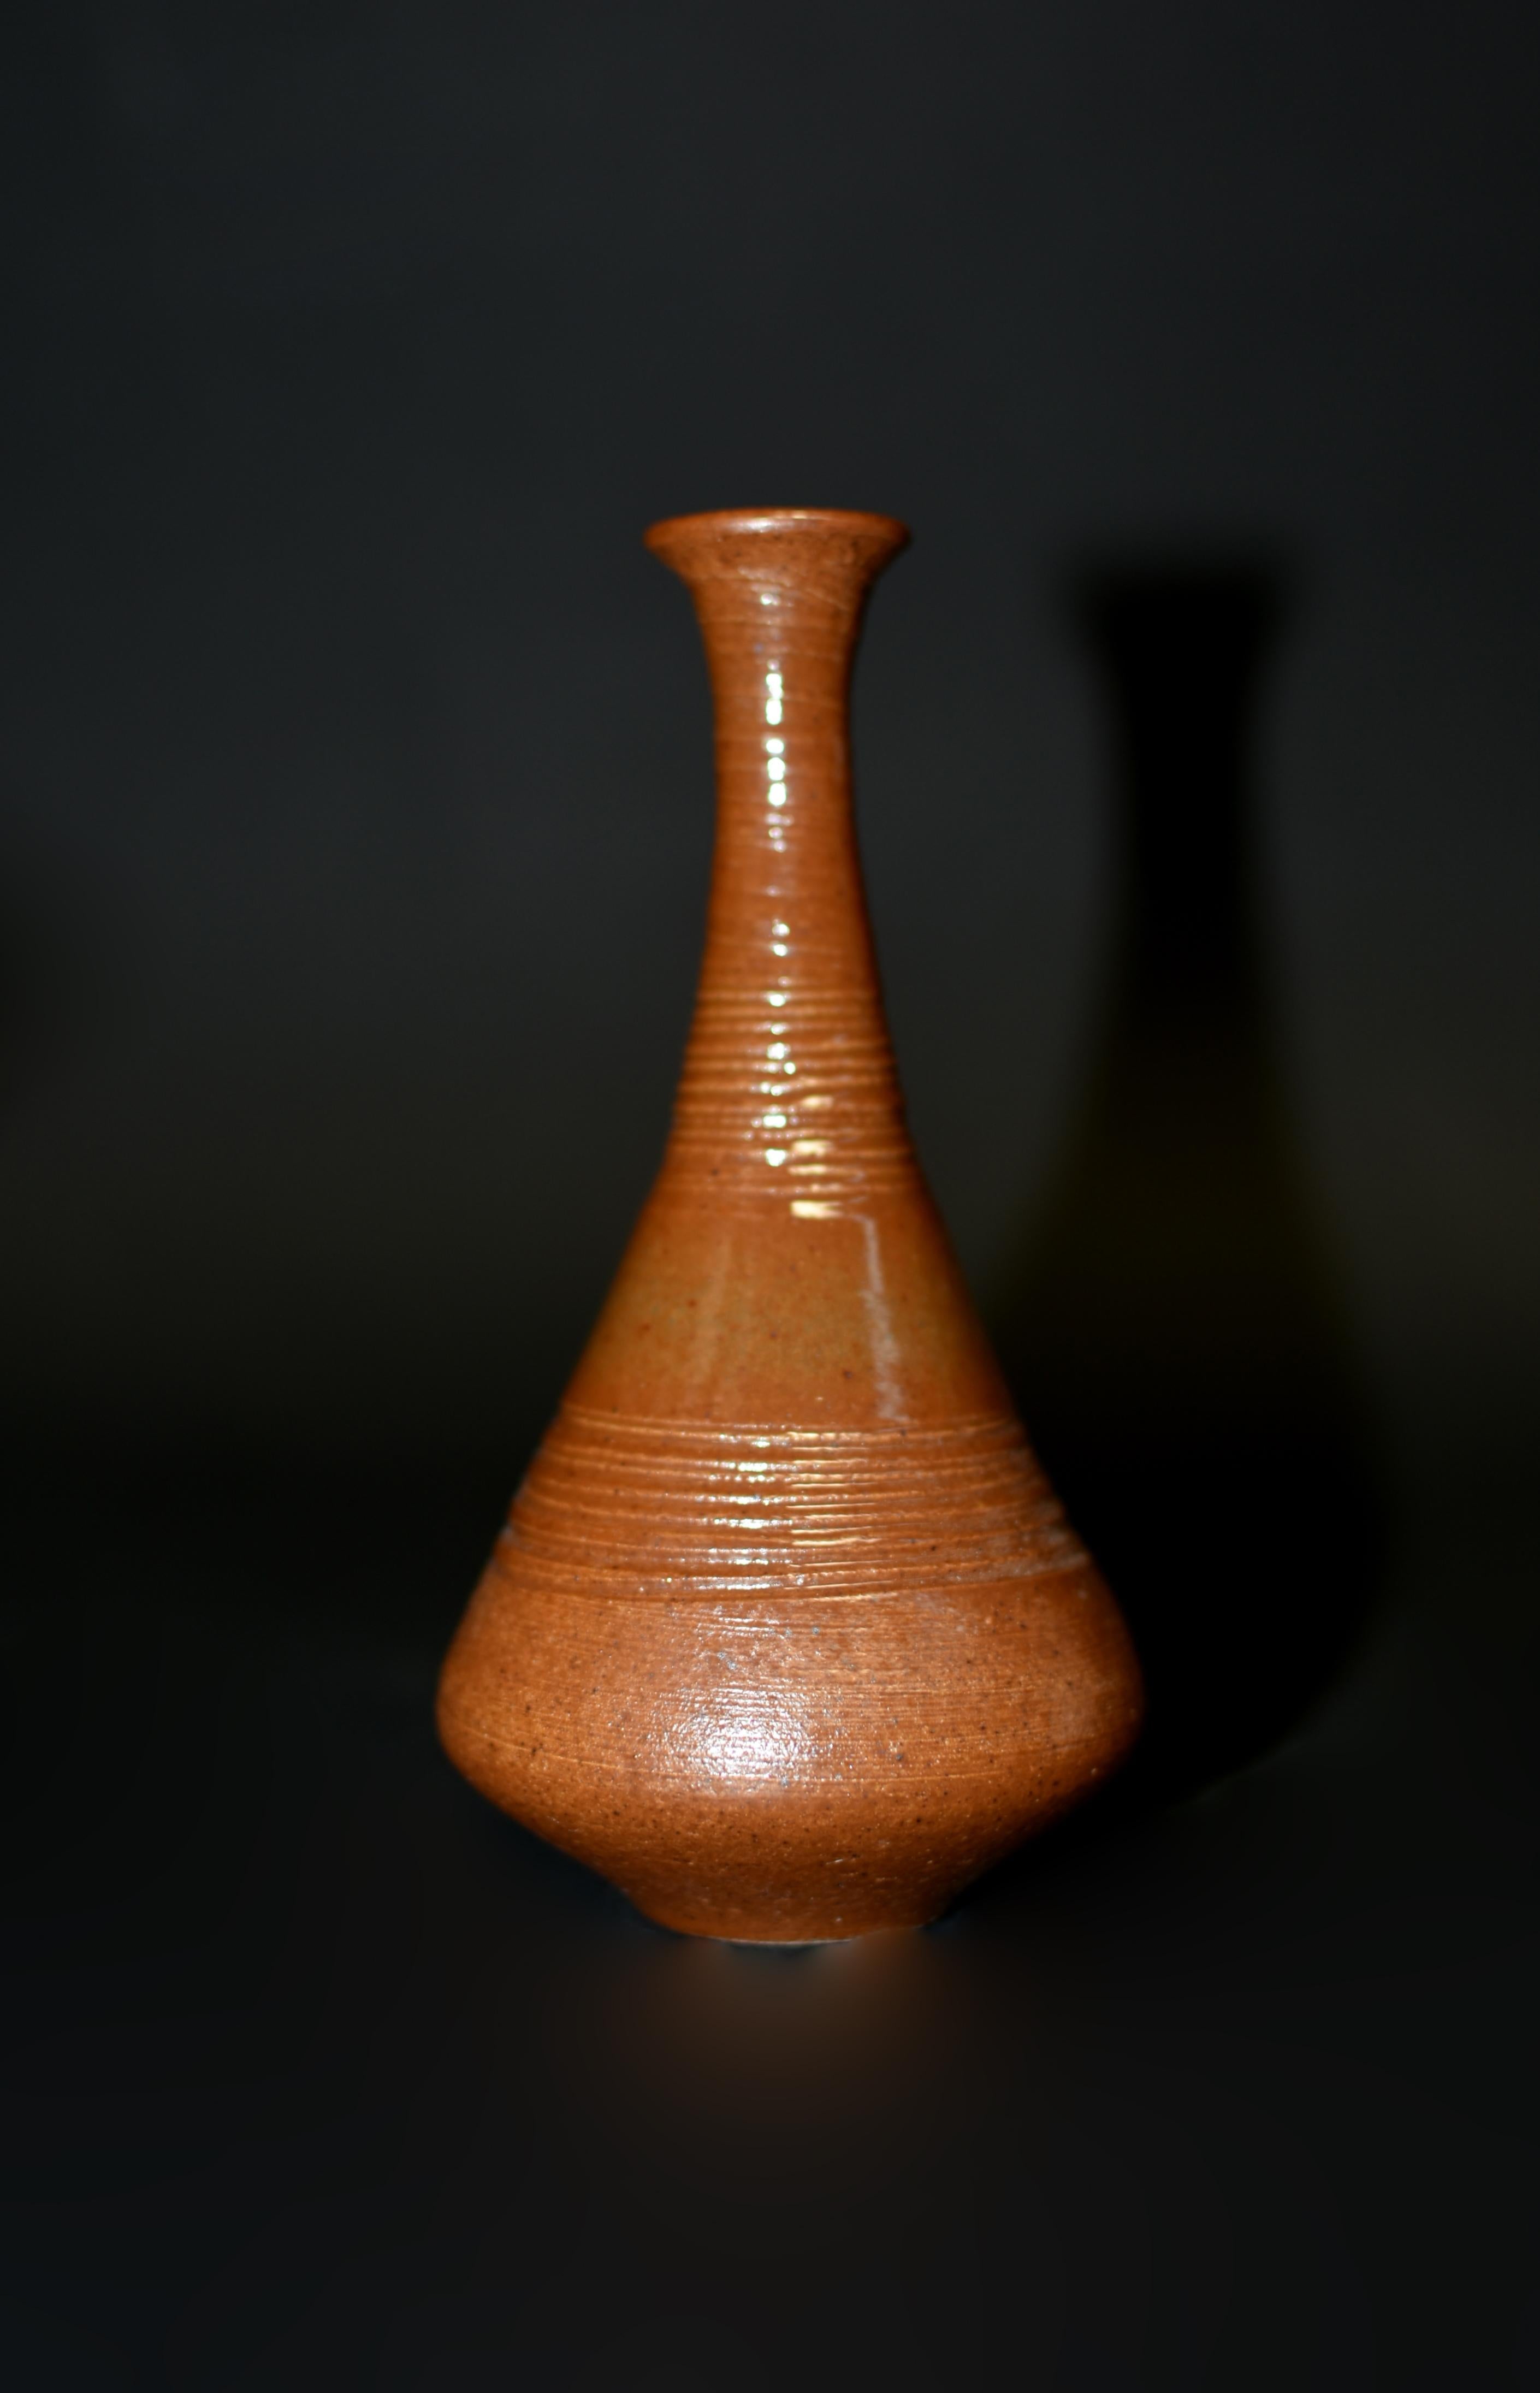 Eine Sammlung von 5 kleinen japanischen Wabi Sabi Keramik Vasen in schönen Erdtönen. Sie sind größer als die üblichen Minivasen, da einige von ihnen über 4